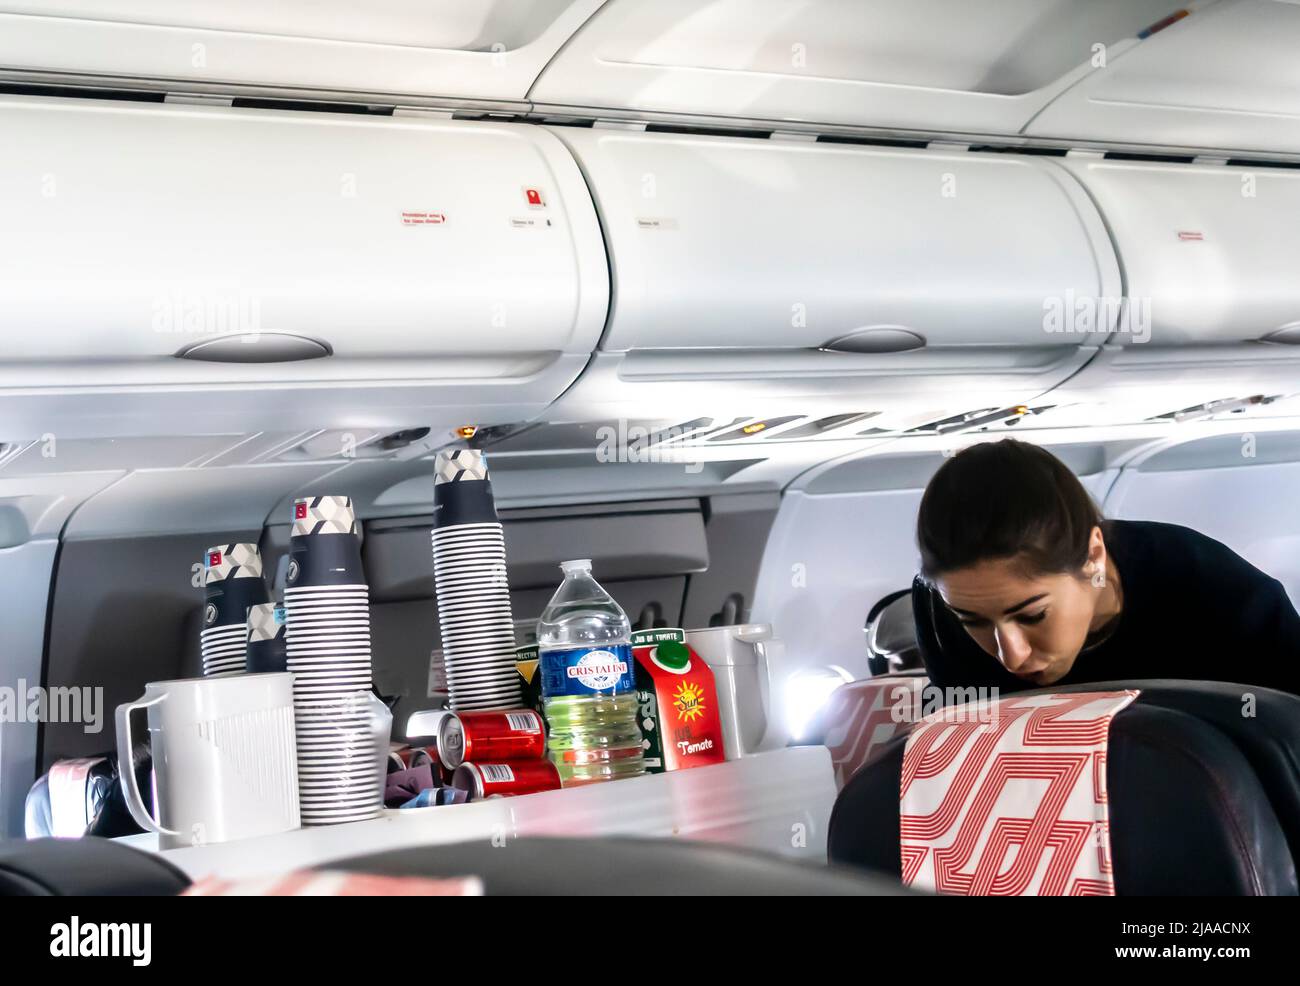 Flugbegleiter, der Passagieren in einer Flugzeugkabine des Typs Airbus A319 von Air France Mahlzeiten und Getränke serviert Stockfoto